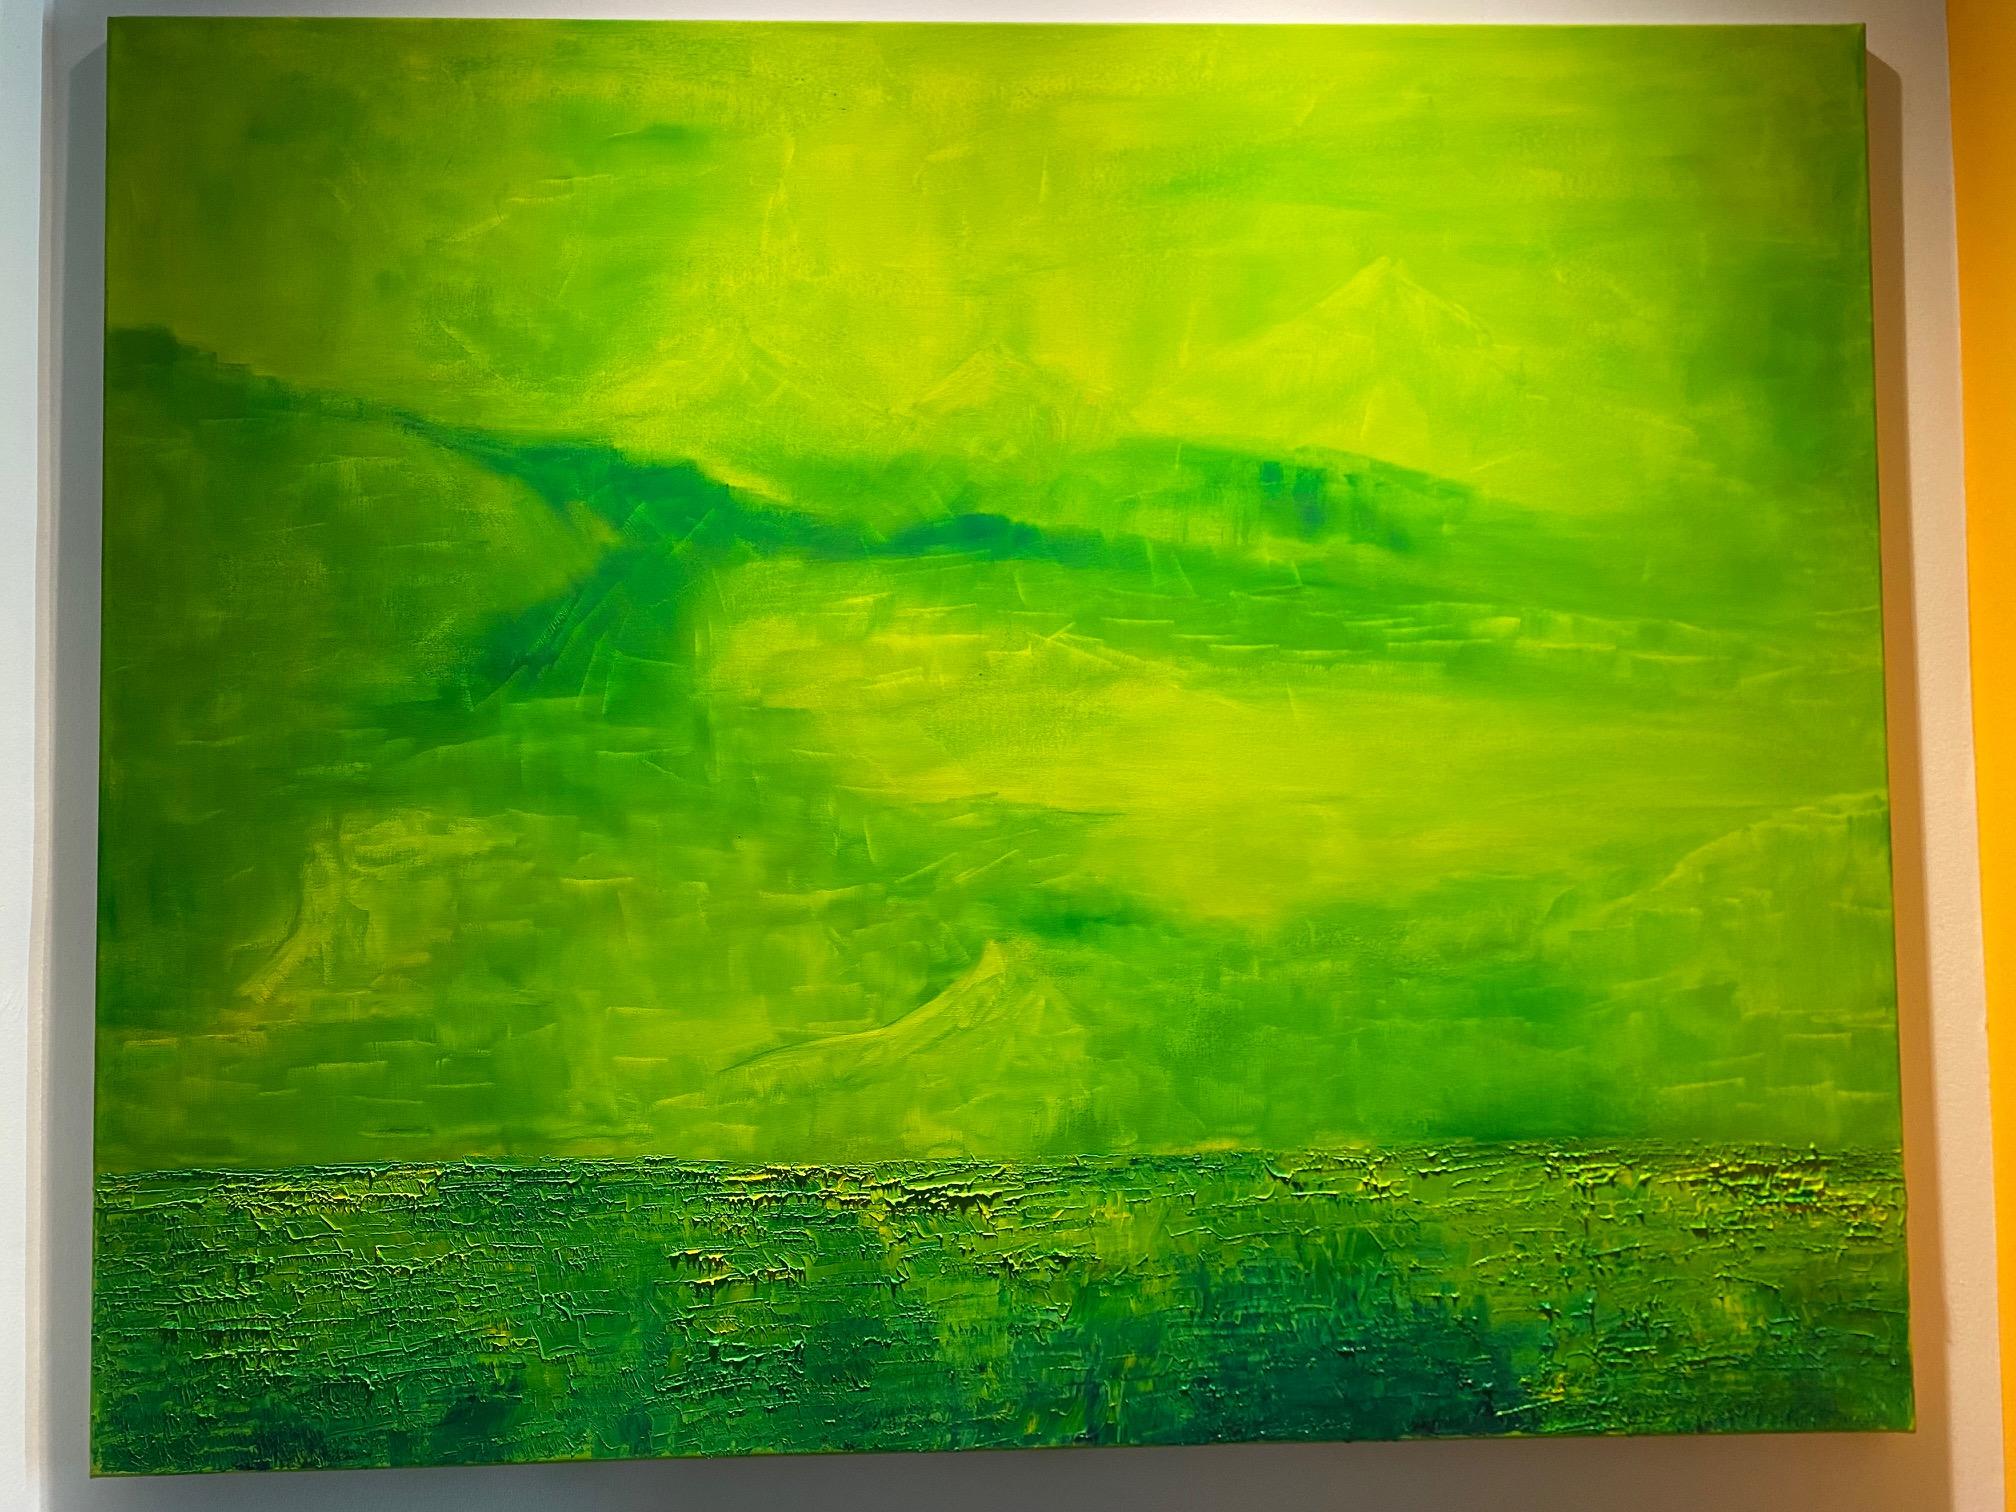 Sans titre - peinture abstraite expressionniste contemporaine, paysage vert - Painting de Willi Bucher